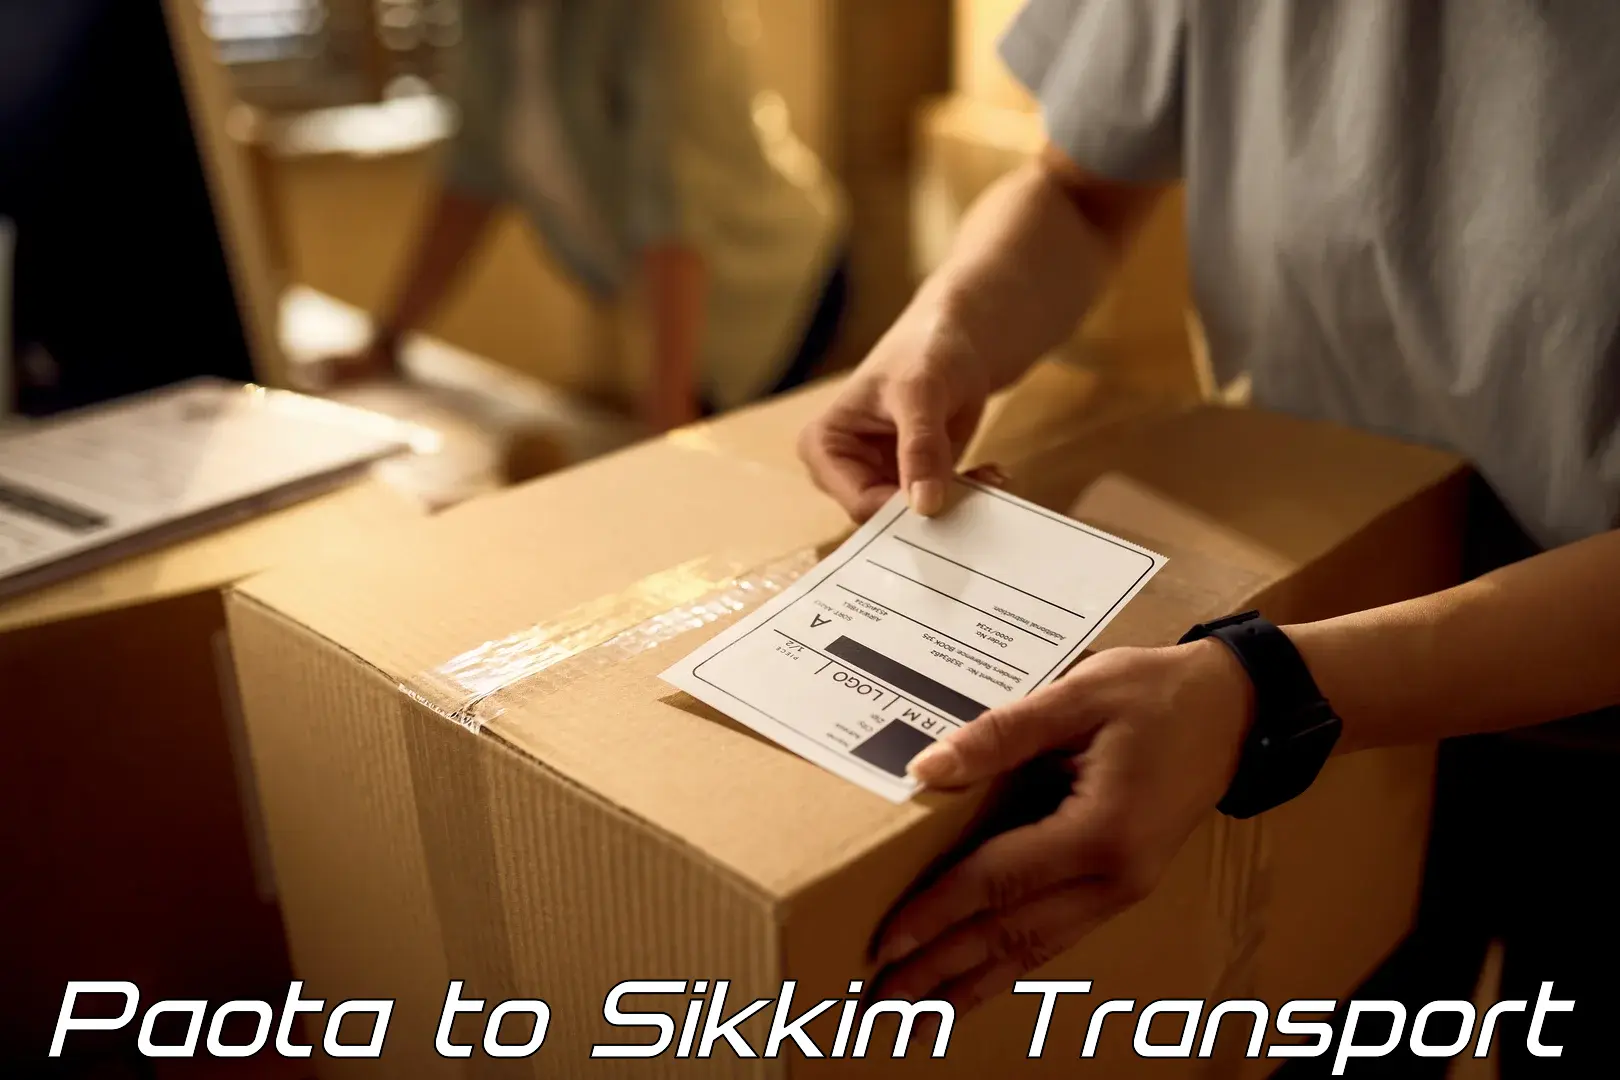 Shipping partner Paota to East Sikkim